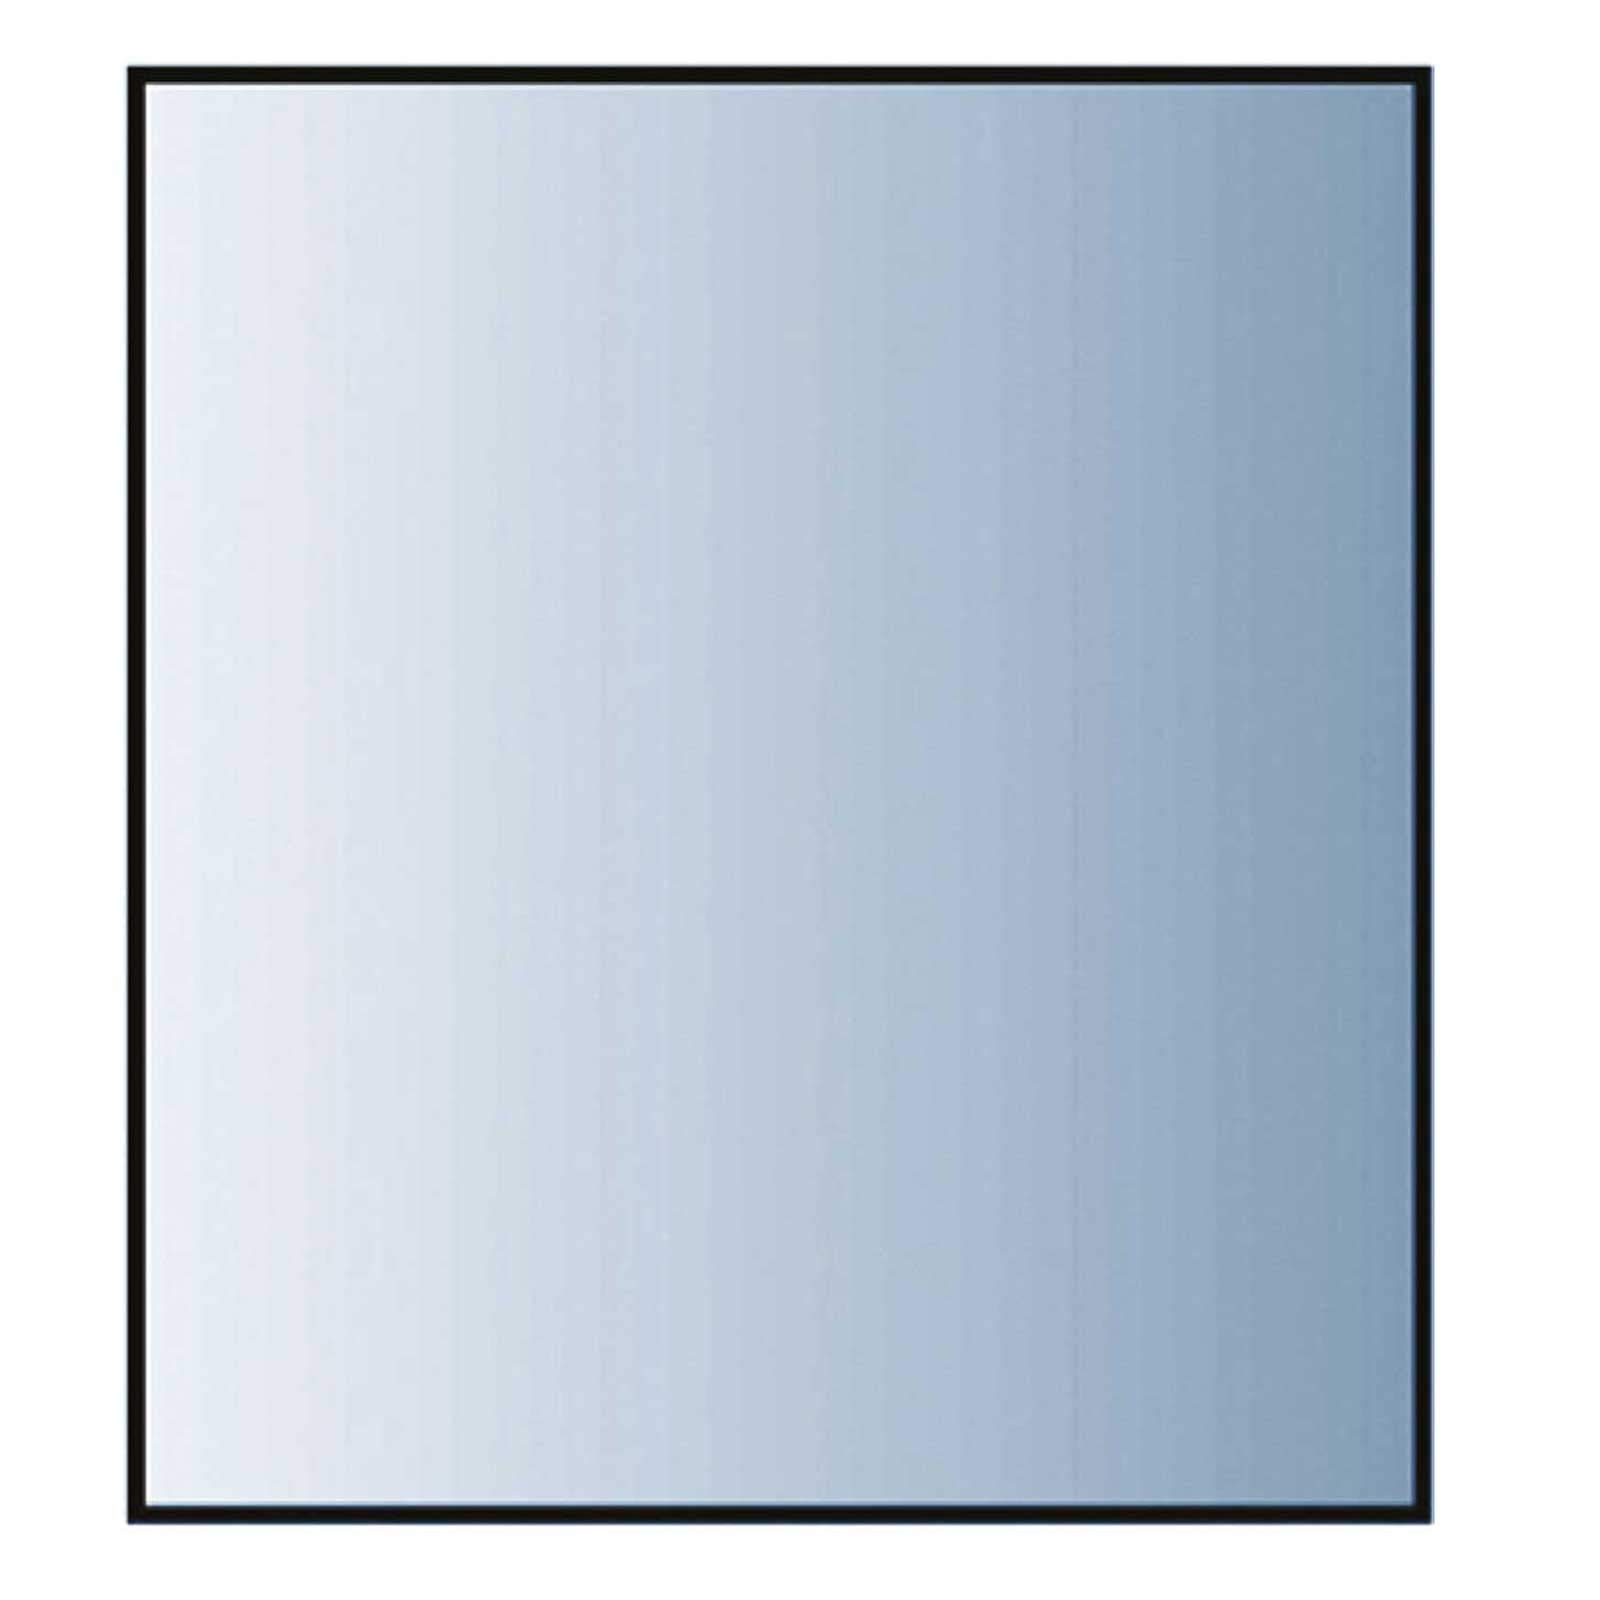 Glasbodenplatte 8 mm Stärke, 80 x 80 cm, Quadratisch 21.02.893.2 Glasplatte Funkenschutz Platte Kamin Ofen Kaminöfen Lienbacher Vorlegeplatte Bodenplatte ESG Sicherheitsglas